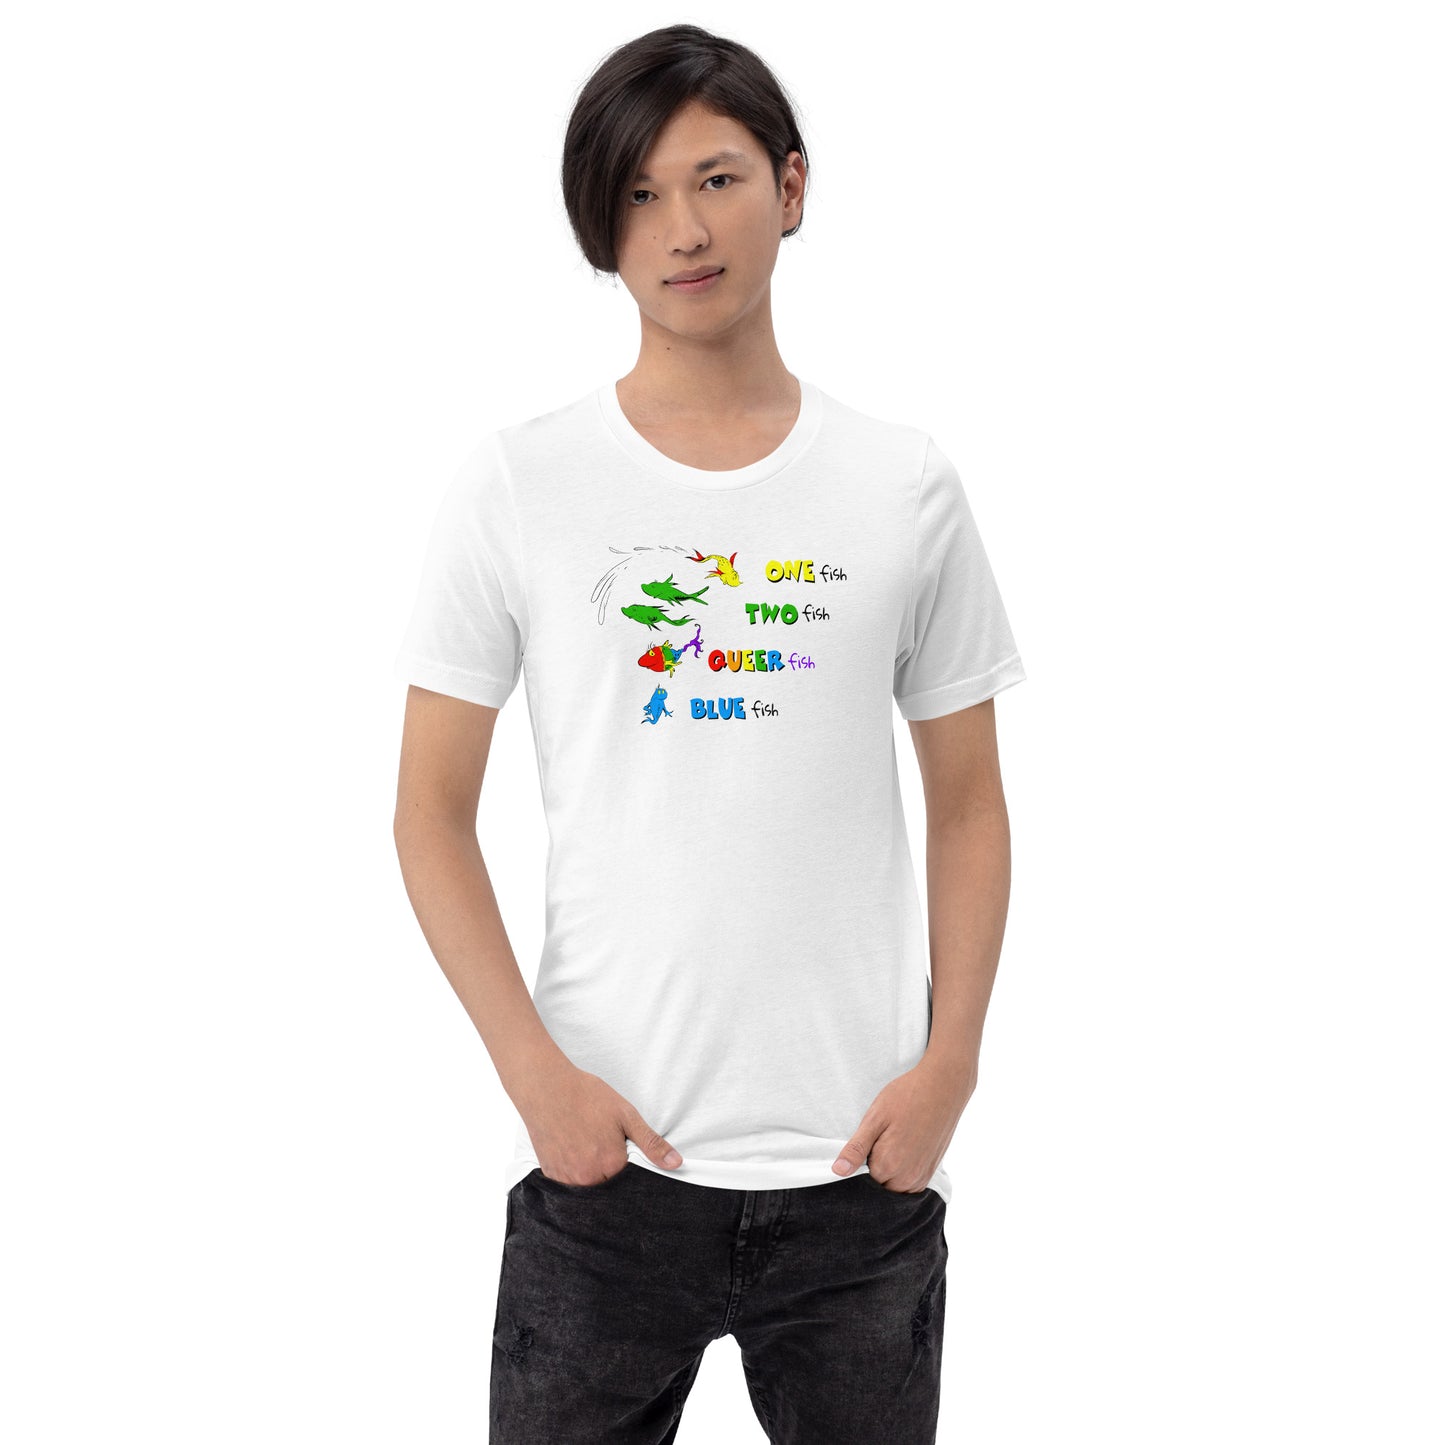 Queer Fish Unisex t-shirt